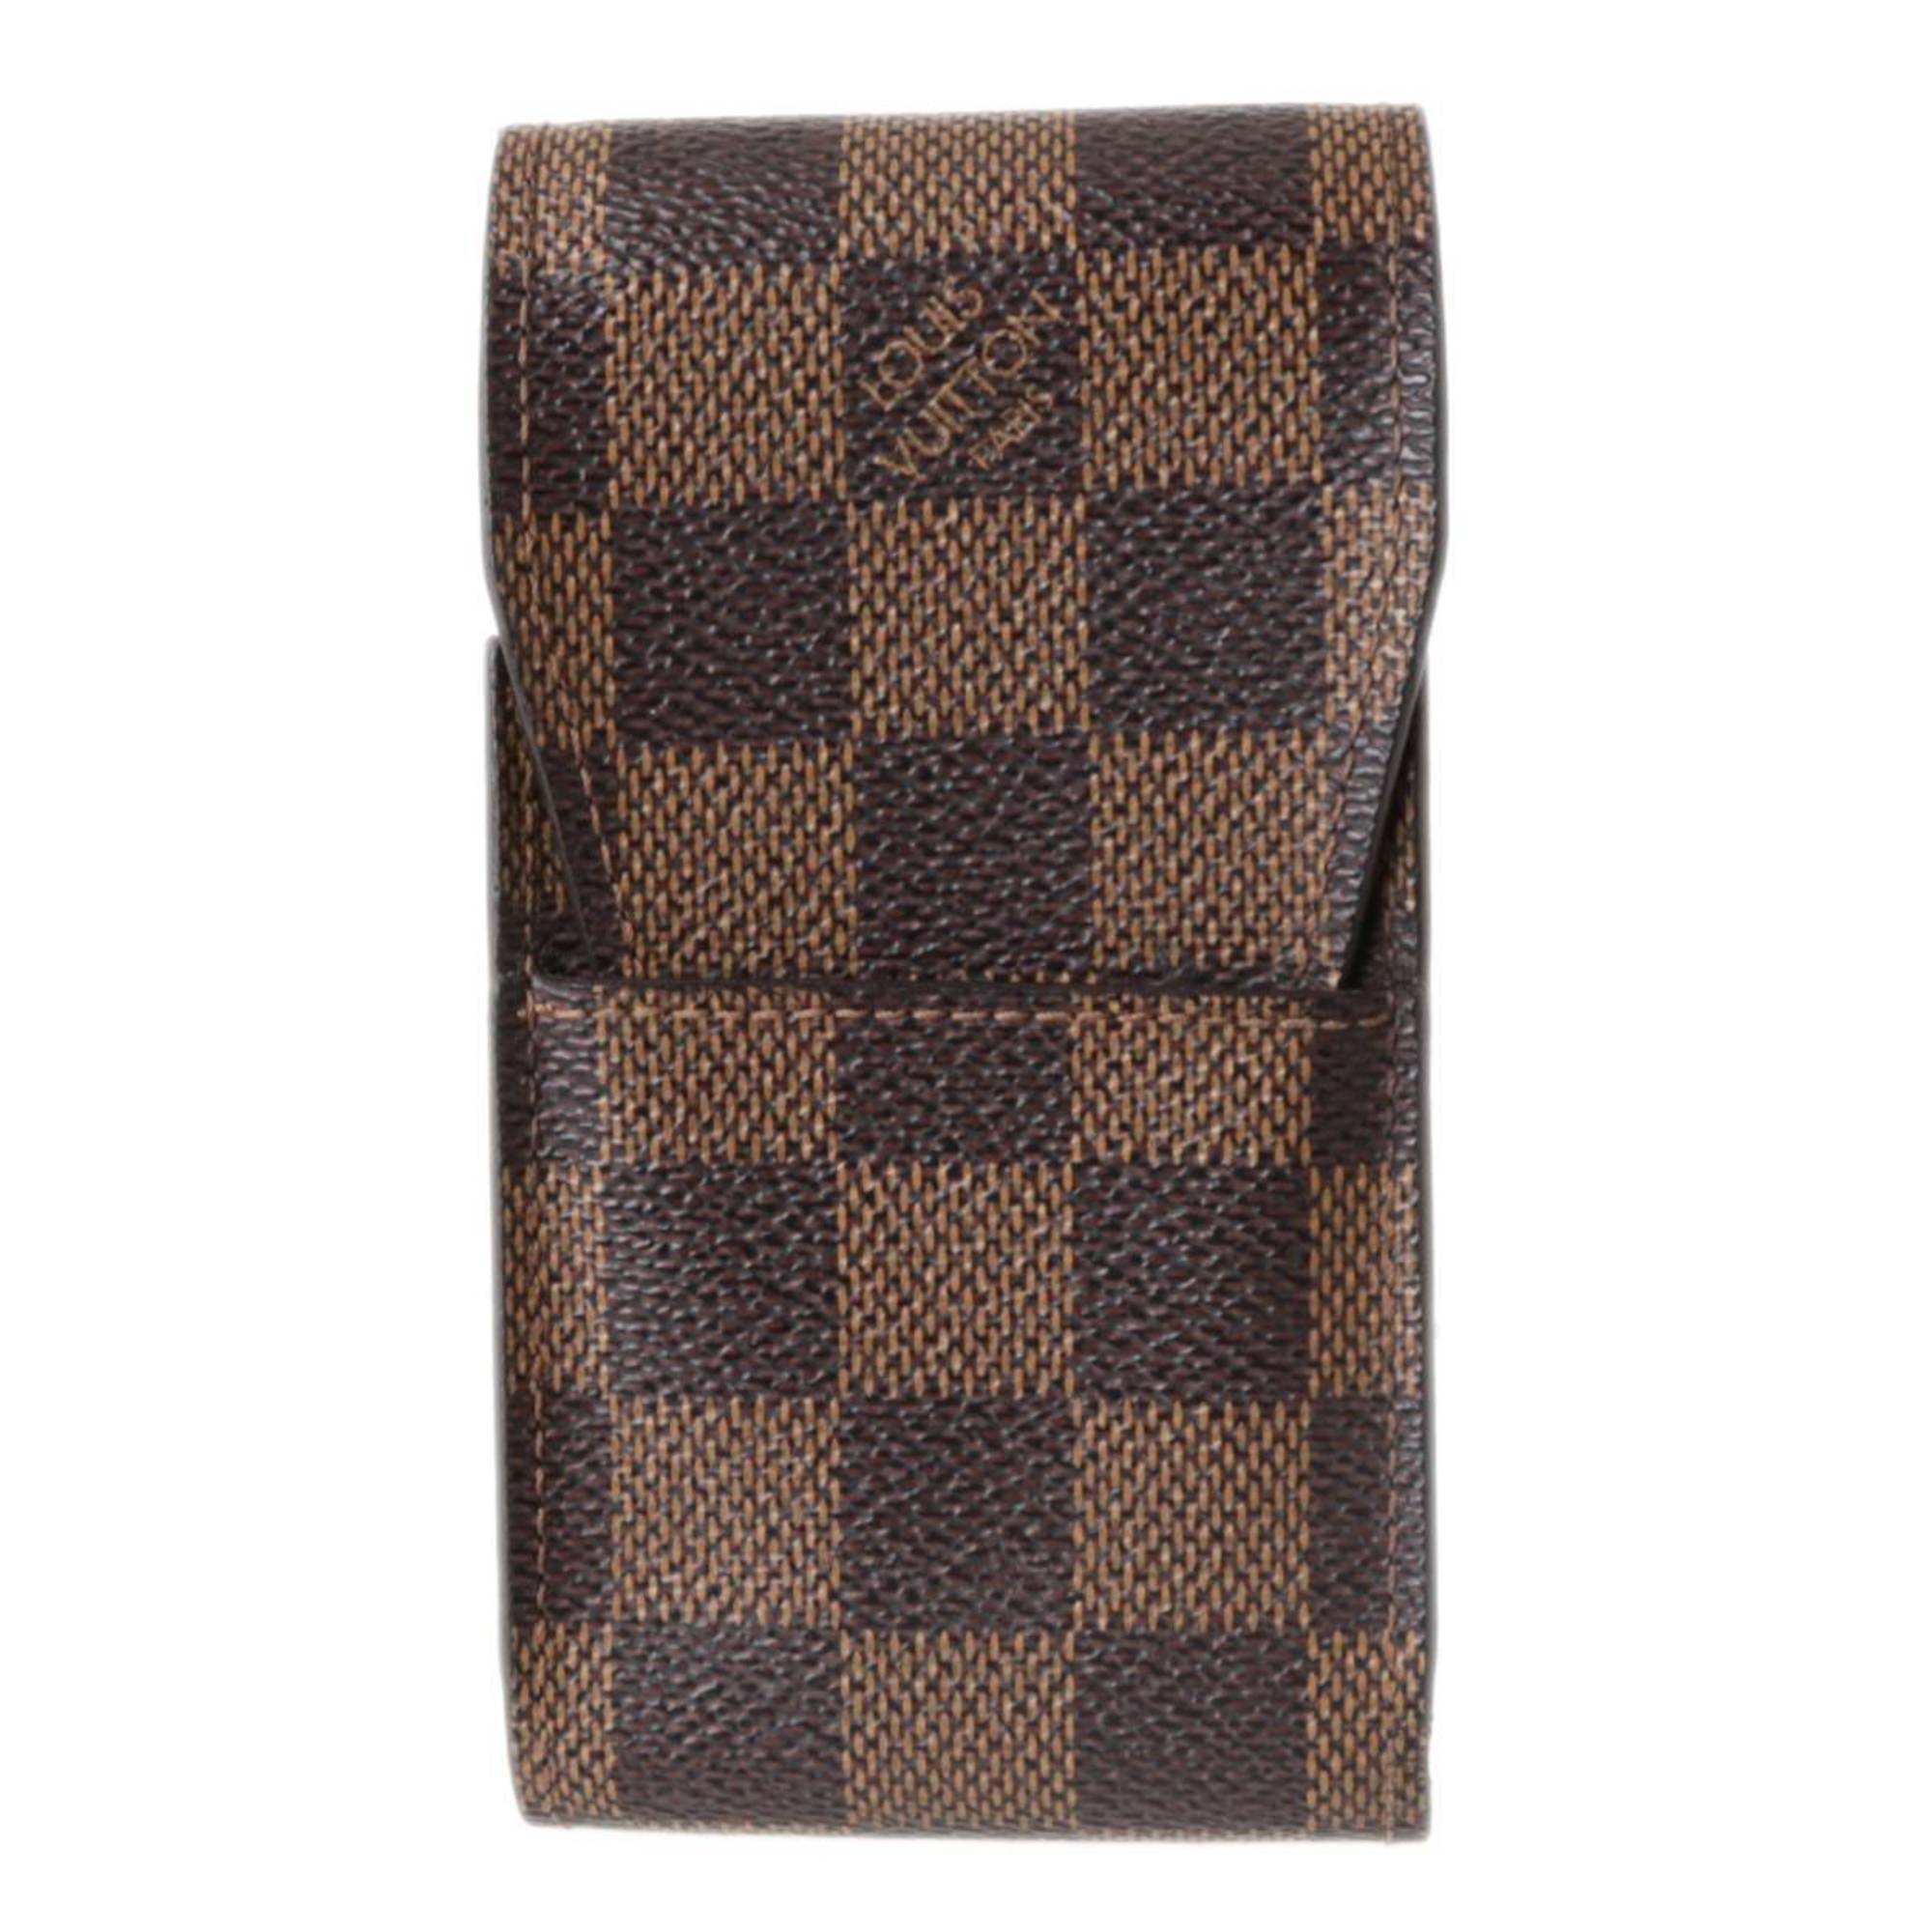 LOUIS VUITTON Louis Vuitton Etuy Cigarette Case Damier Ebene N63024 CT1016